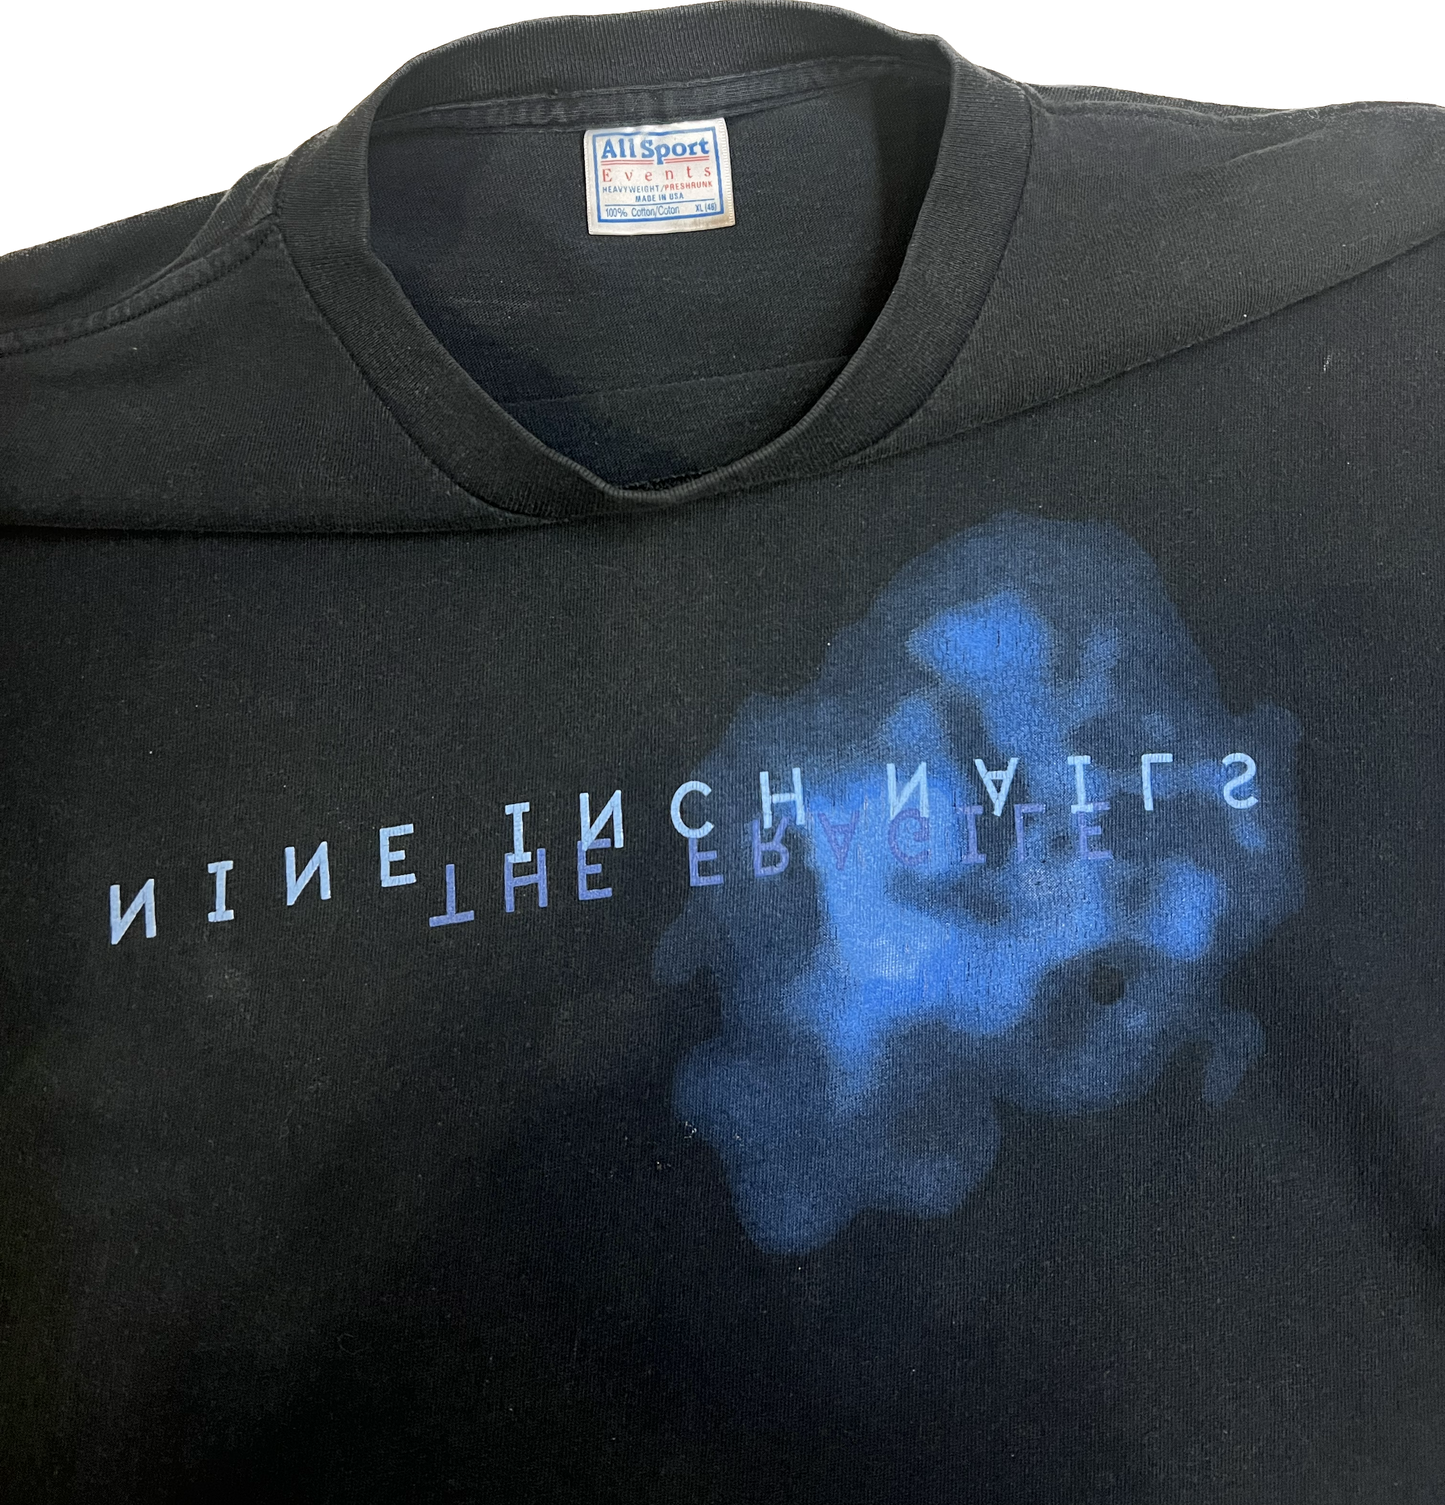 Nine Inch Nails 1999 The Fragile Vintage T shirt